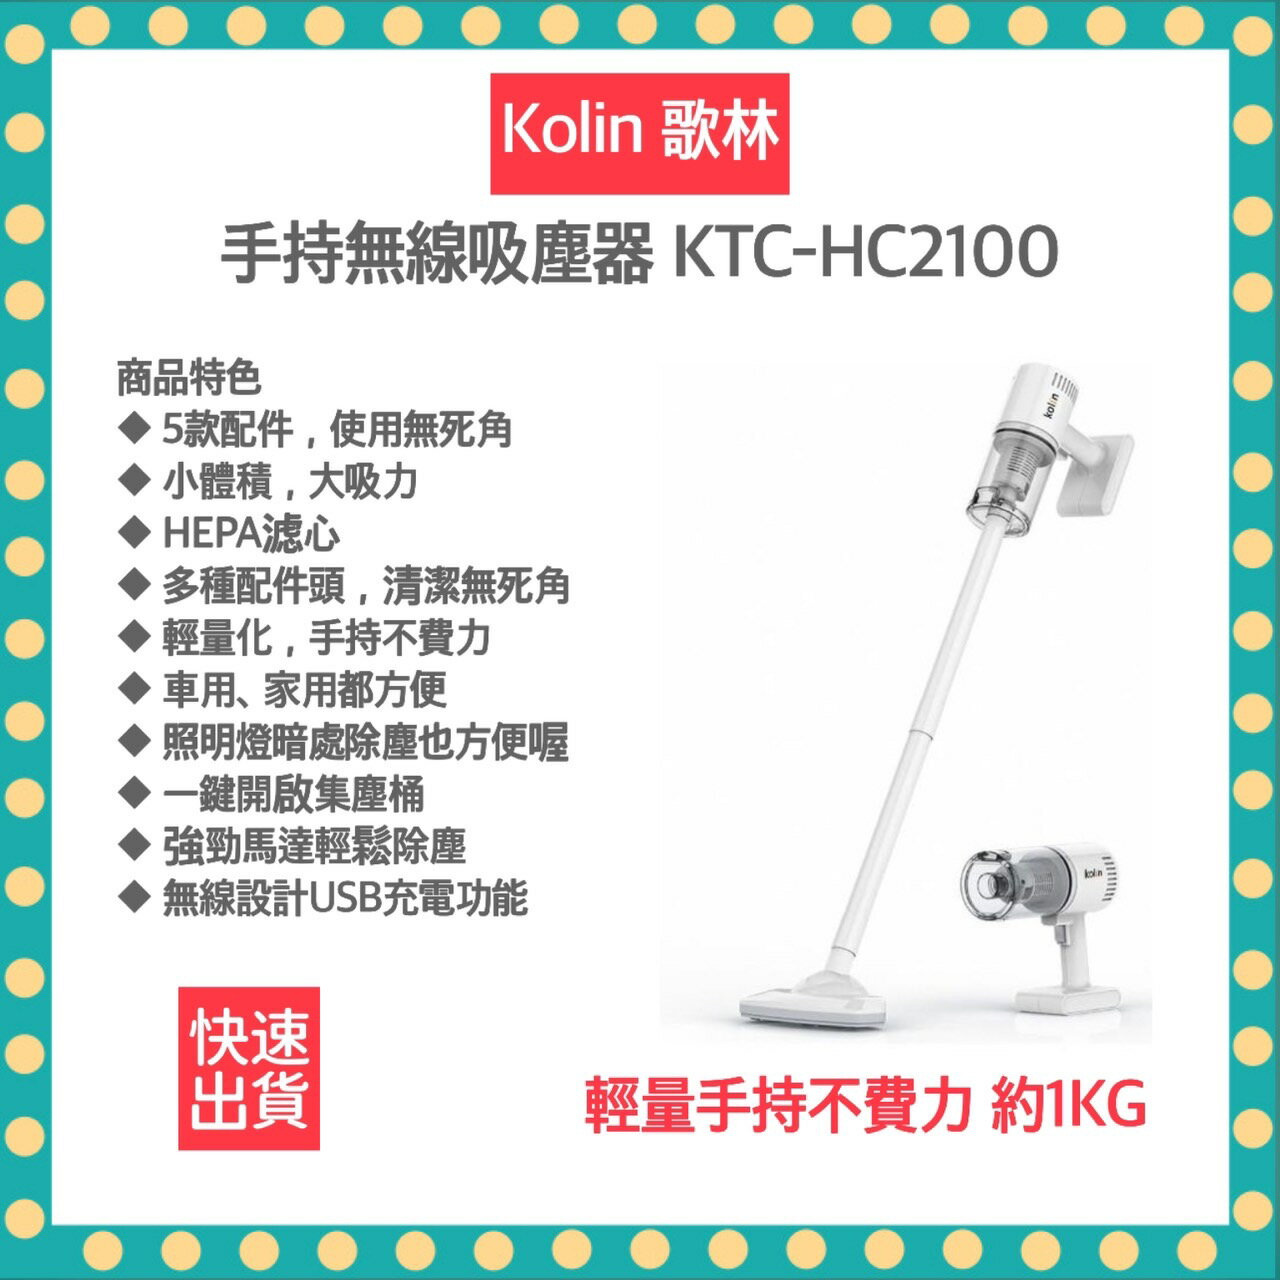 【免運 快速出貨 發票保固】無線手持直立兩用吸塵器 KTC-HC2100 無限吸塵器 吸塵器 直立式吸塵器